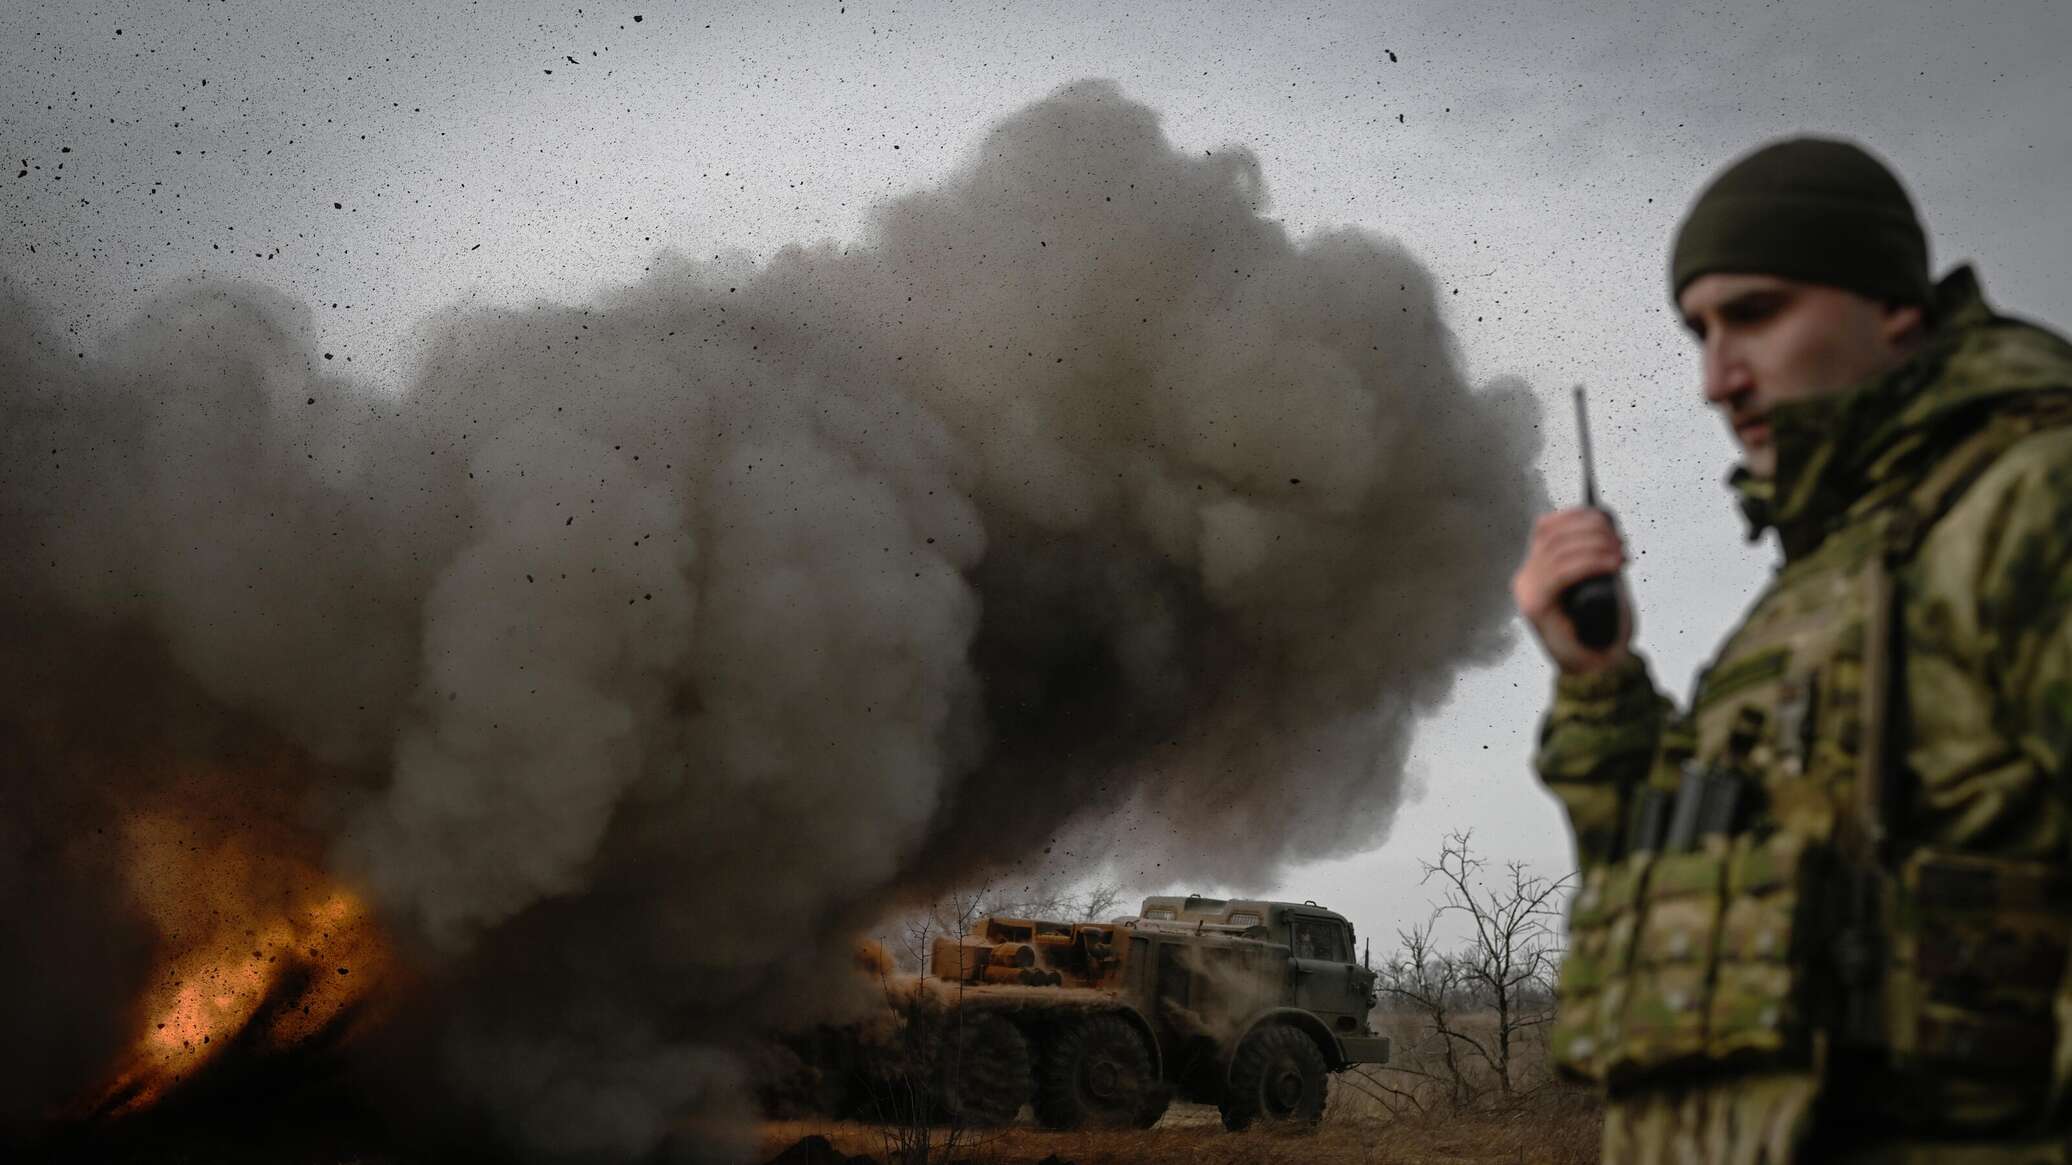 شويغو: الجيش الروسي يواصل دفع المسلحين الأوكرانيين نحو الغرب